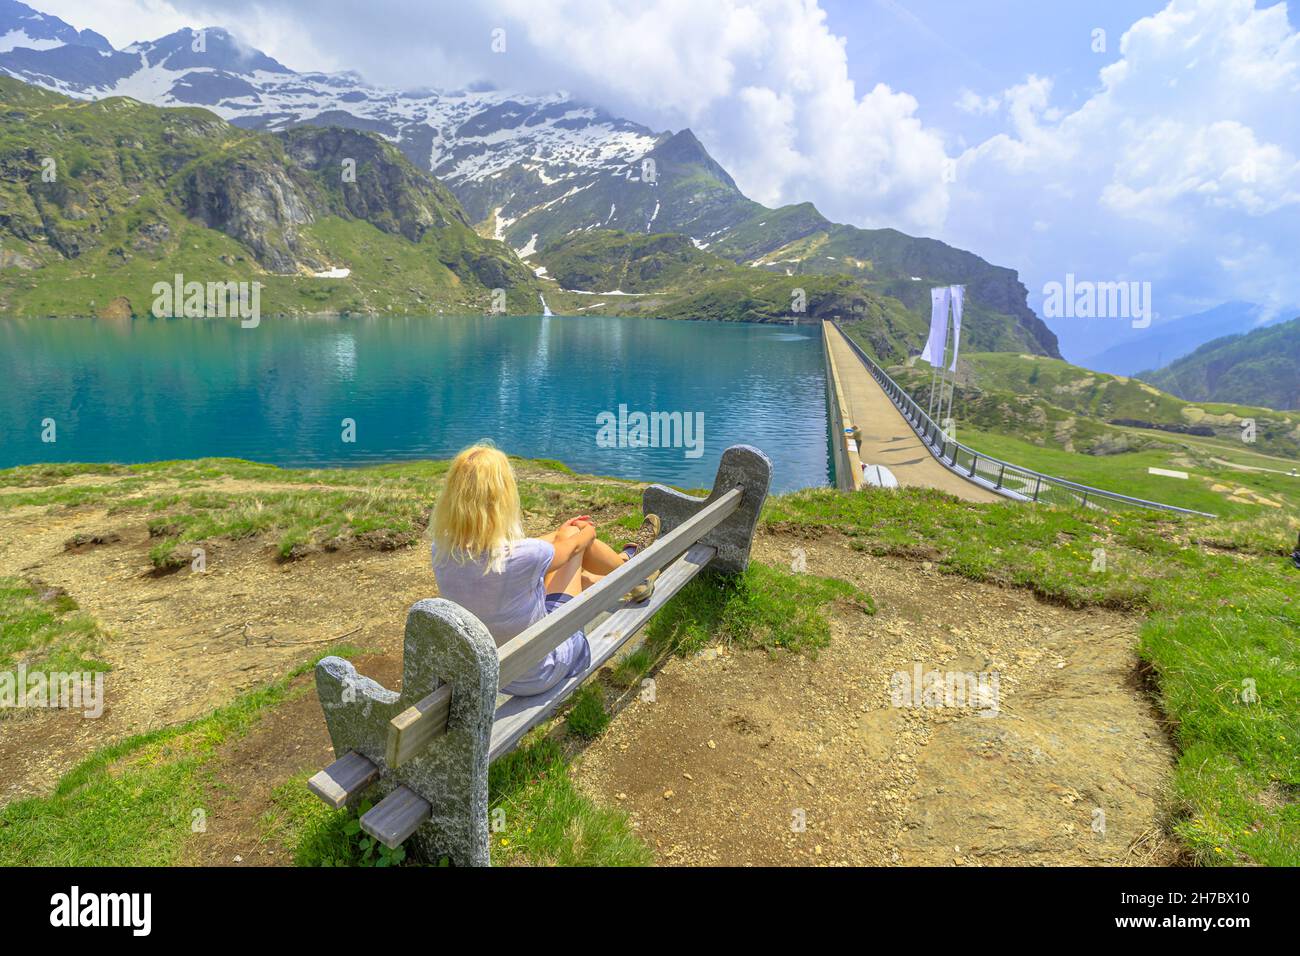 Vista aerea sulla diga di Robiei in Svizzera: ragazza backpacker dopo il trekking, poggiato su una panchina del lago Robiei. Riserva svizzera in Valle Maggia Foto Stock